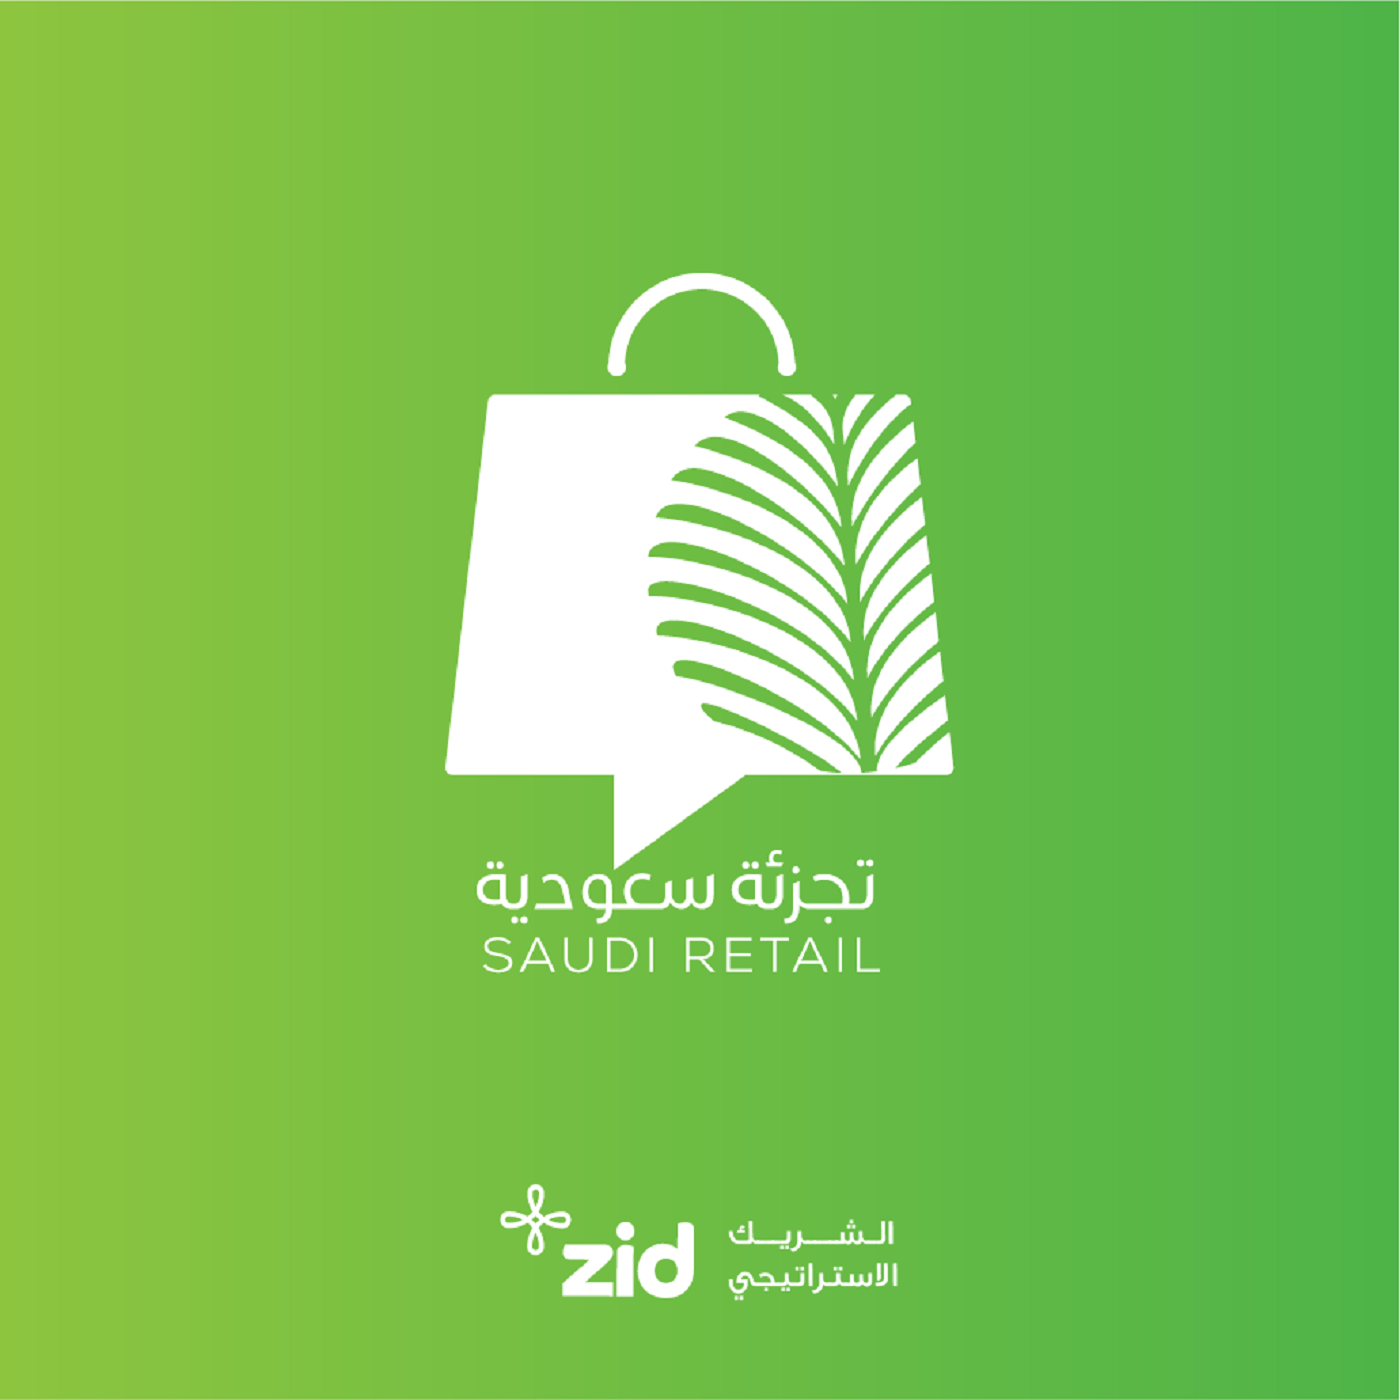 تجزئة سعودية: الحلقة الثامنة ـ تميم الغنام | طموح أكبر شركة للتجارة الإلكترونية في الشرق الأوسط